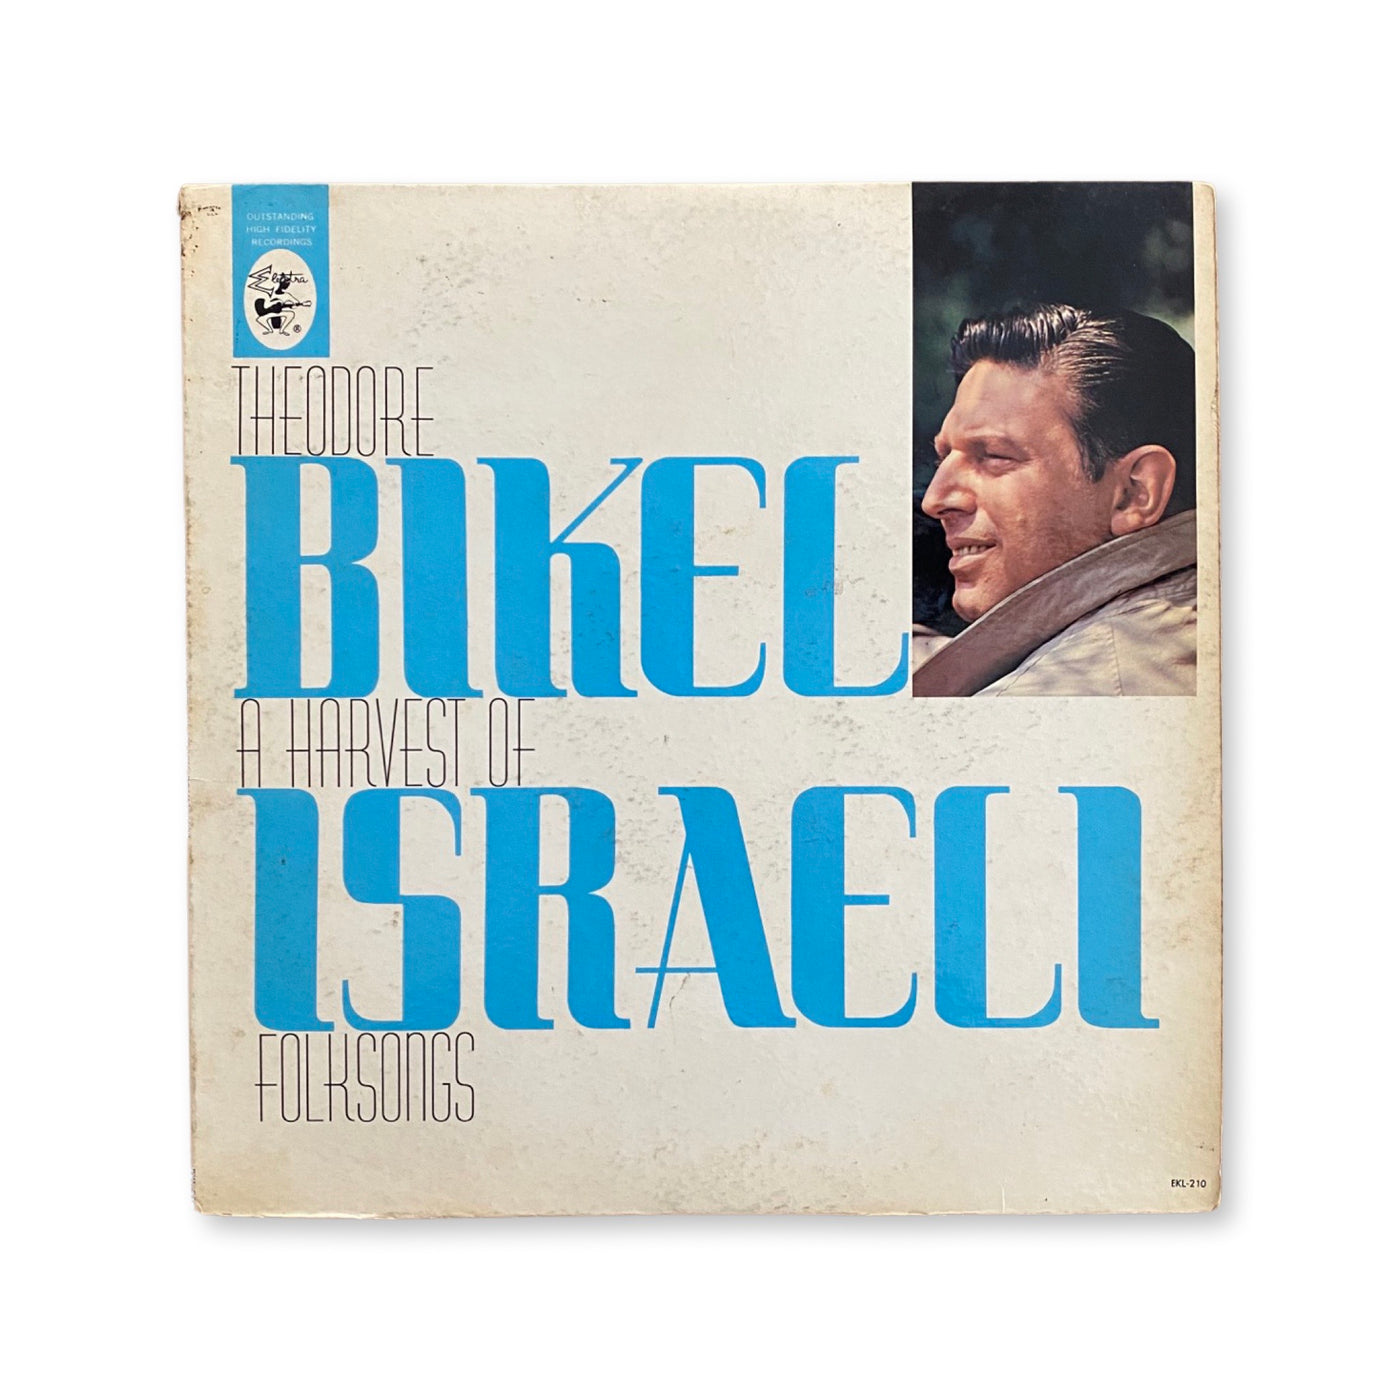 Theodore Bikel - A Harvest Of Israeli Folksongs